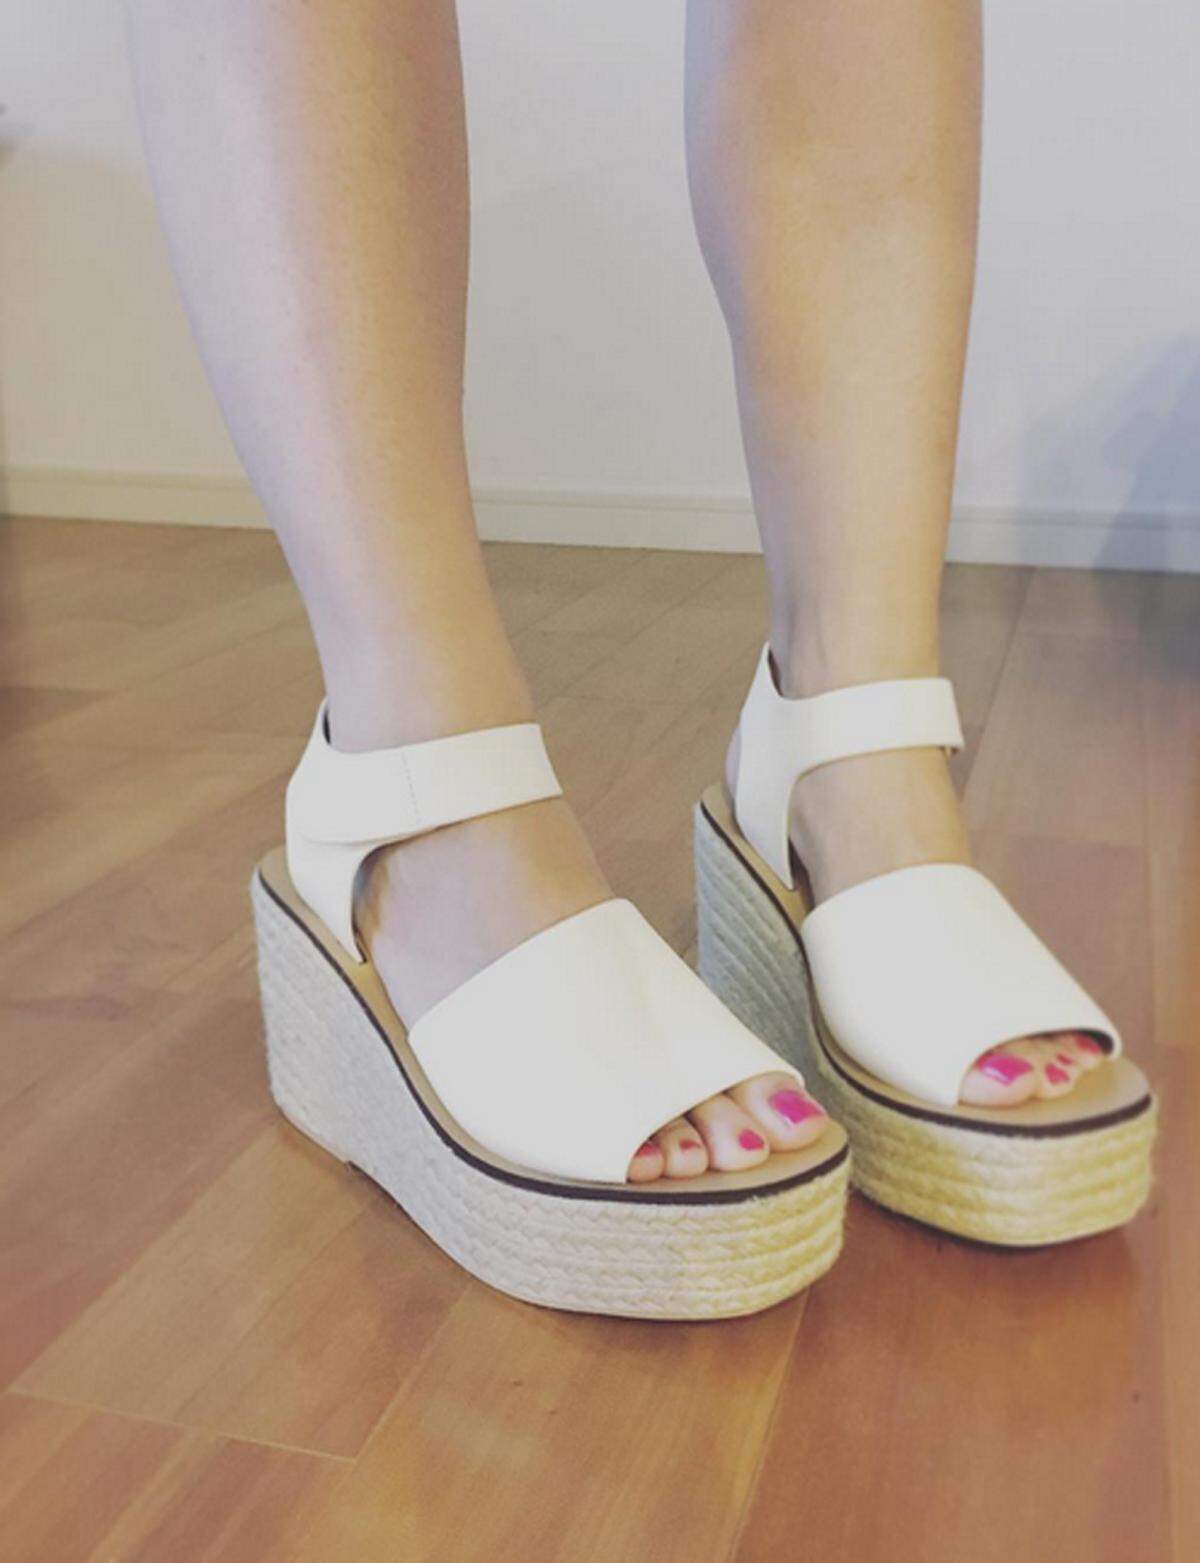 Wer Wert auf einen schlanken Fuß und einen grazilen Gang legt, sollte auf die Sandalen mit XL-Sohle verzichten.   